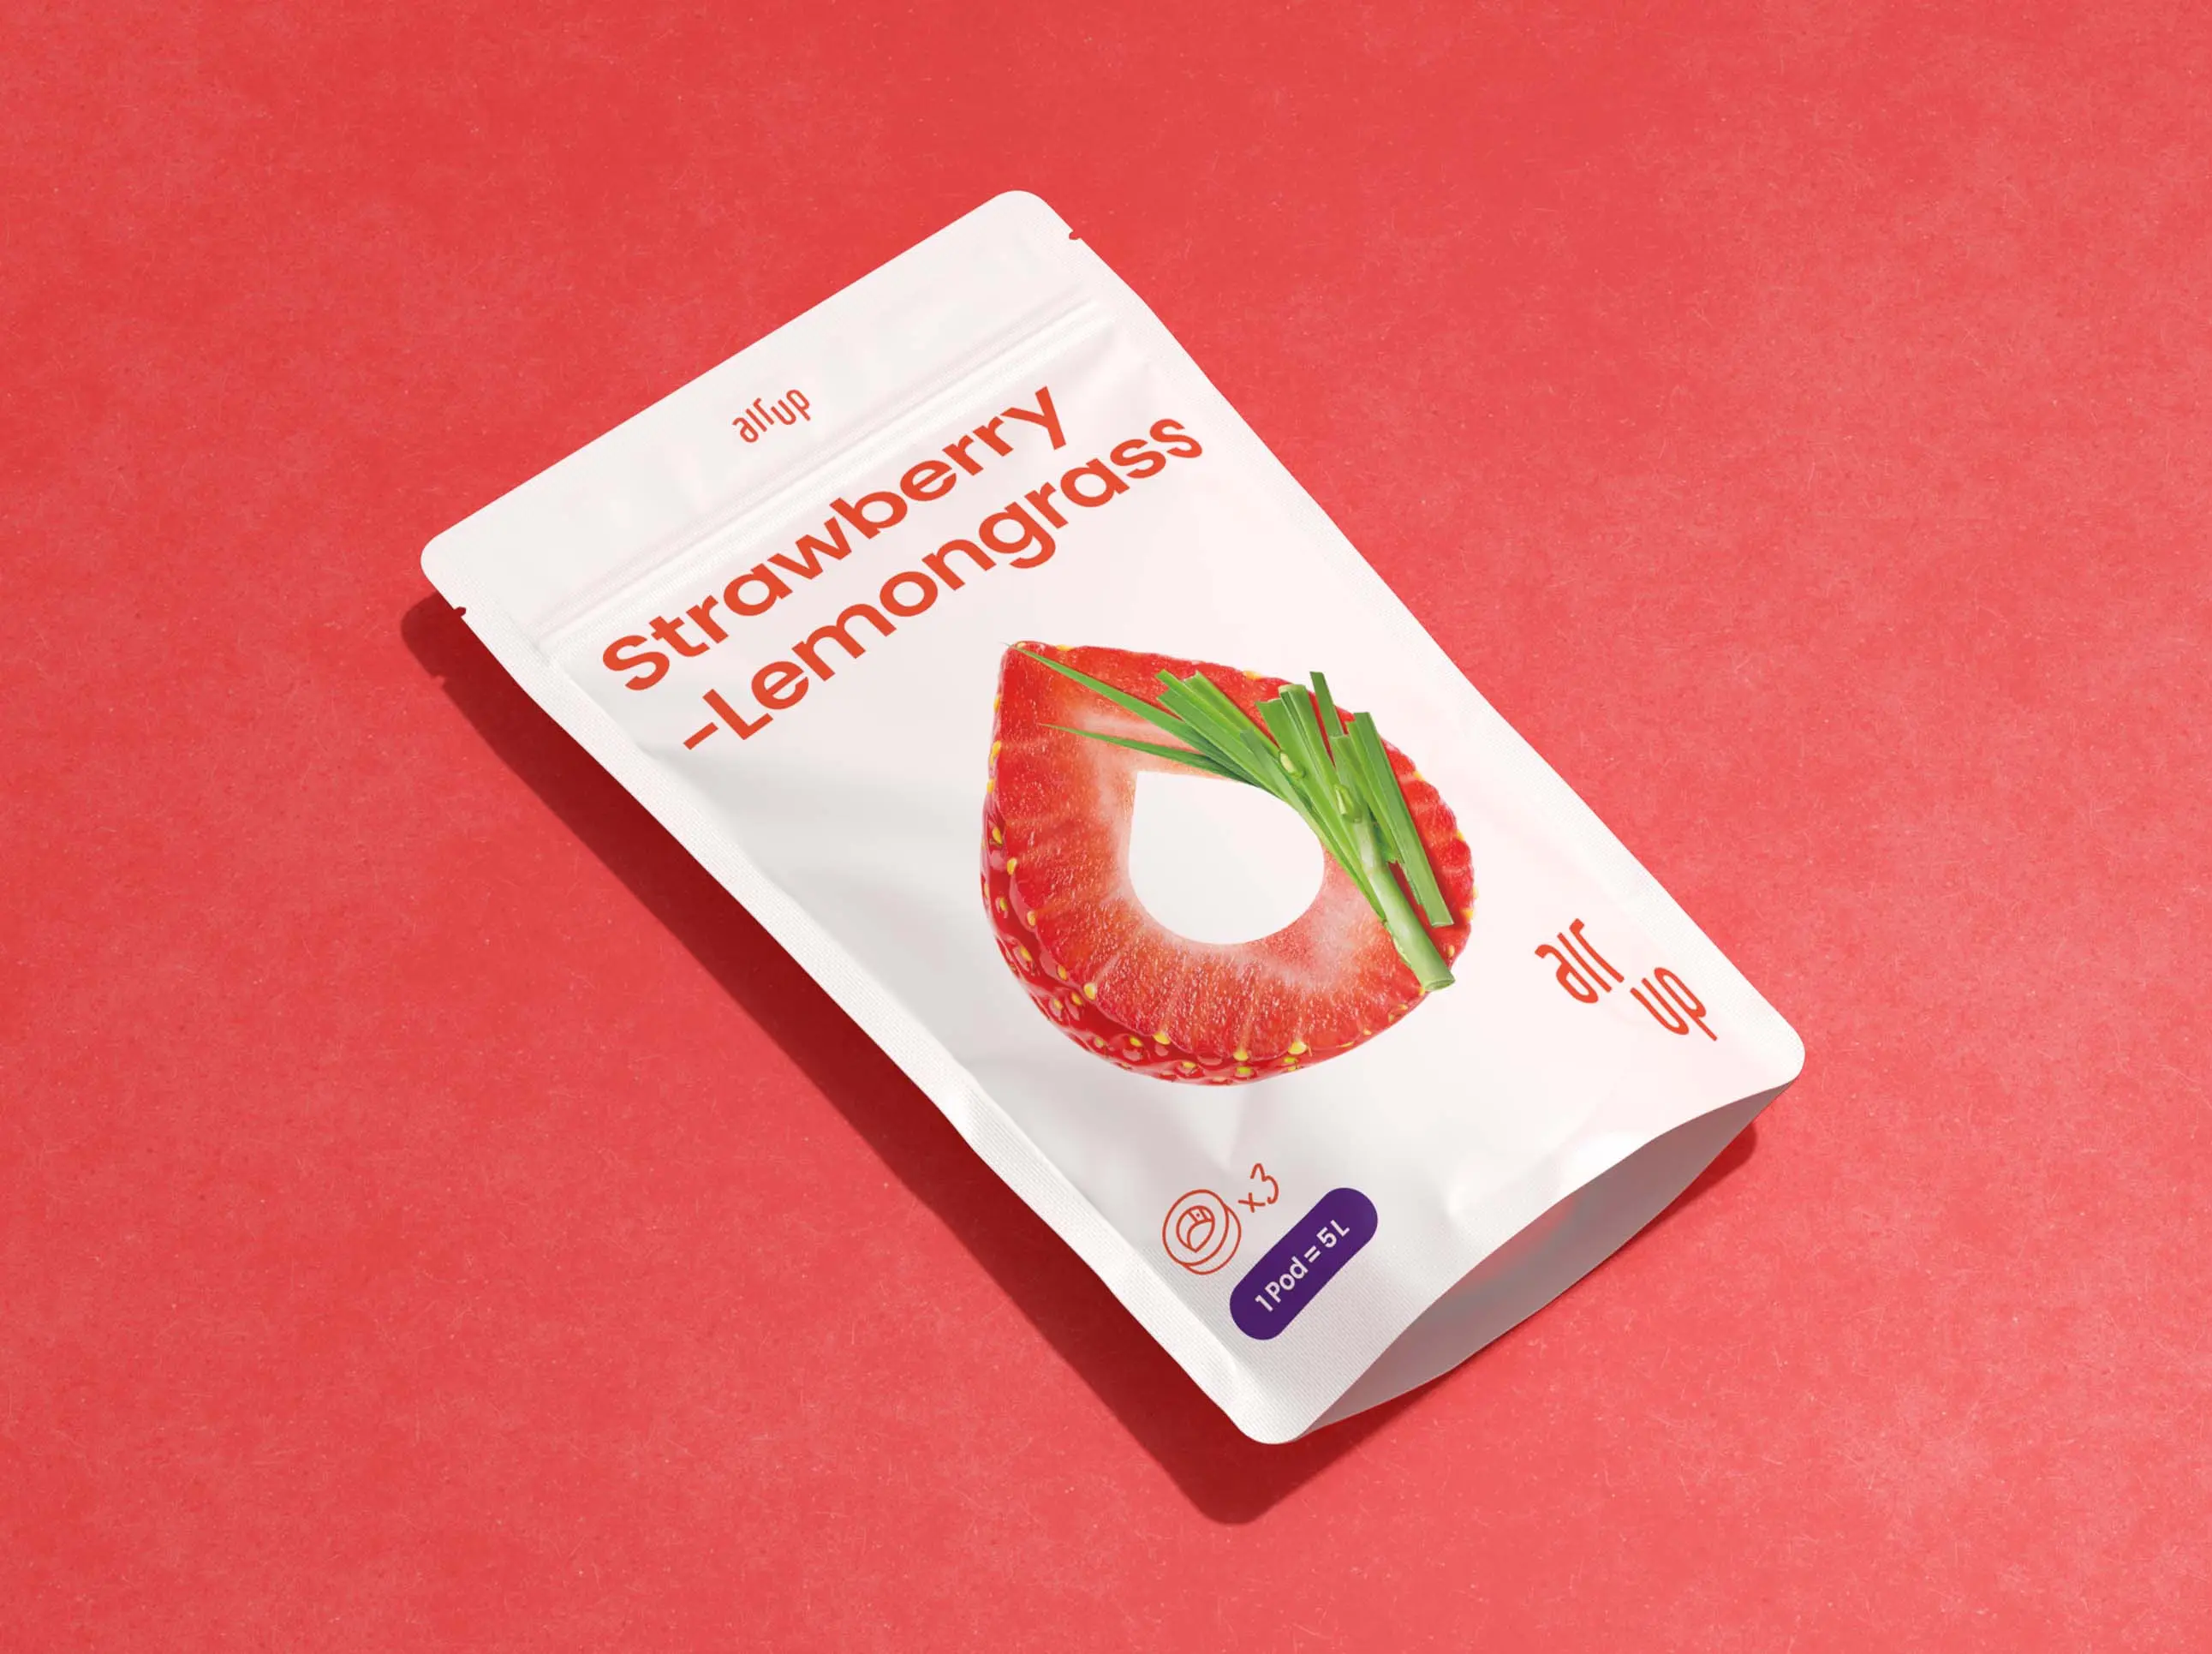 Strawberry-Lemongrass Pods